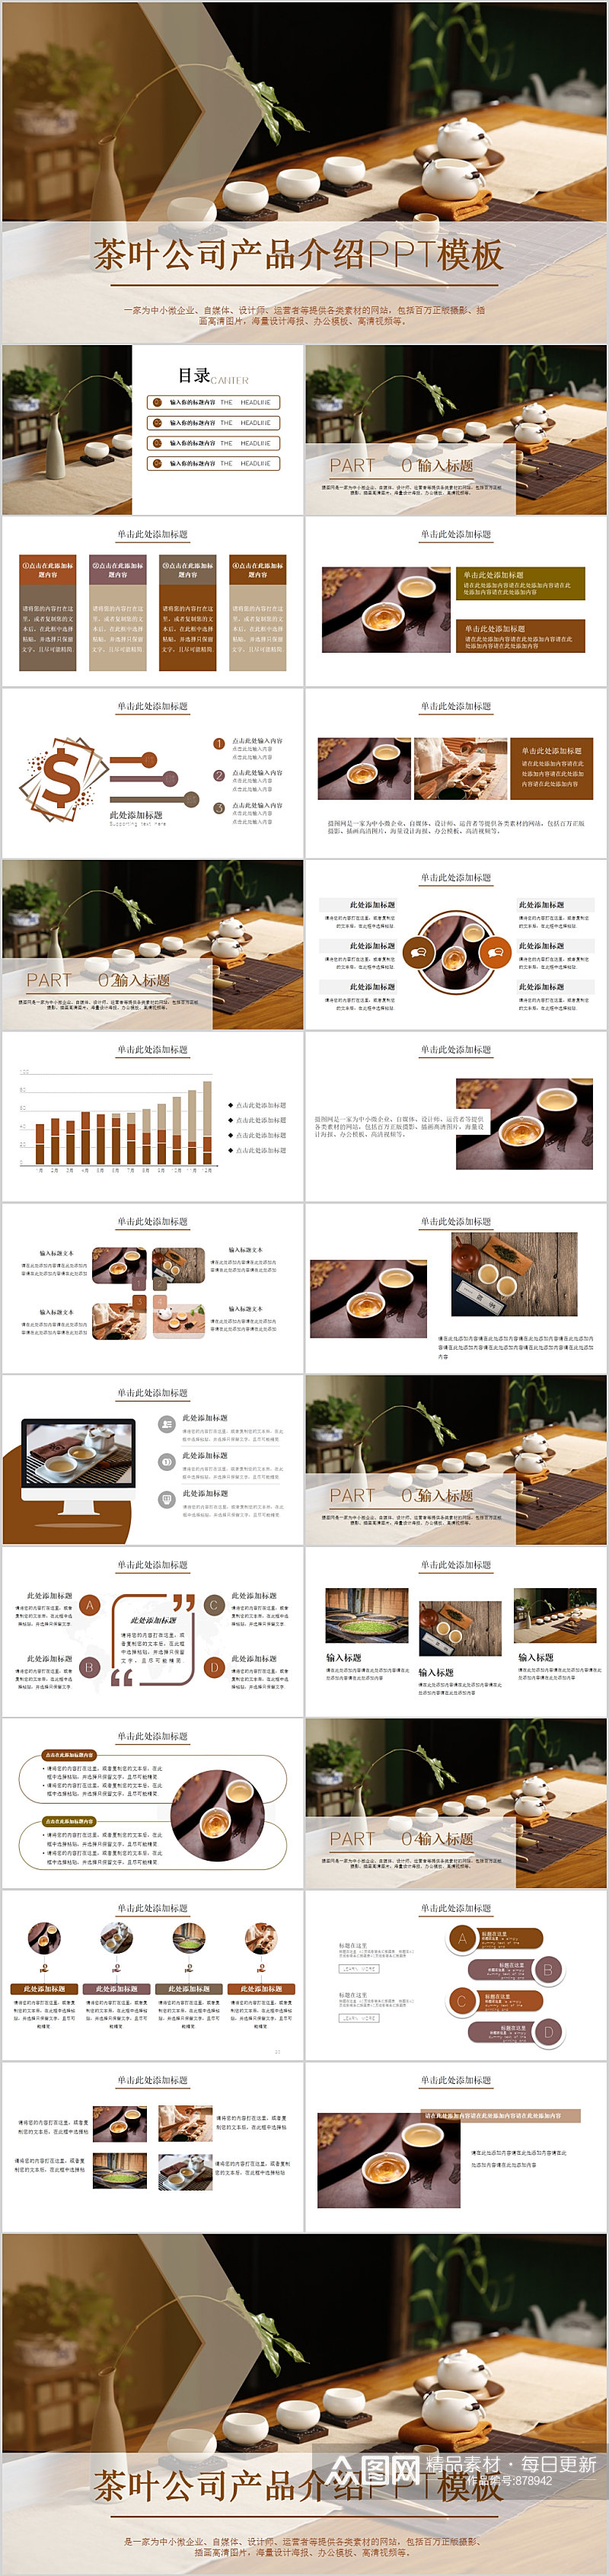 茶叶公司产品介绍PPT模板素材